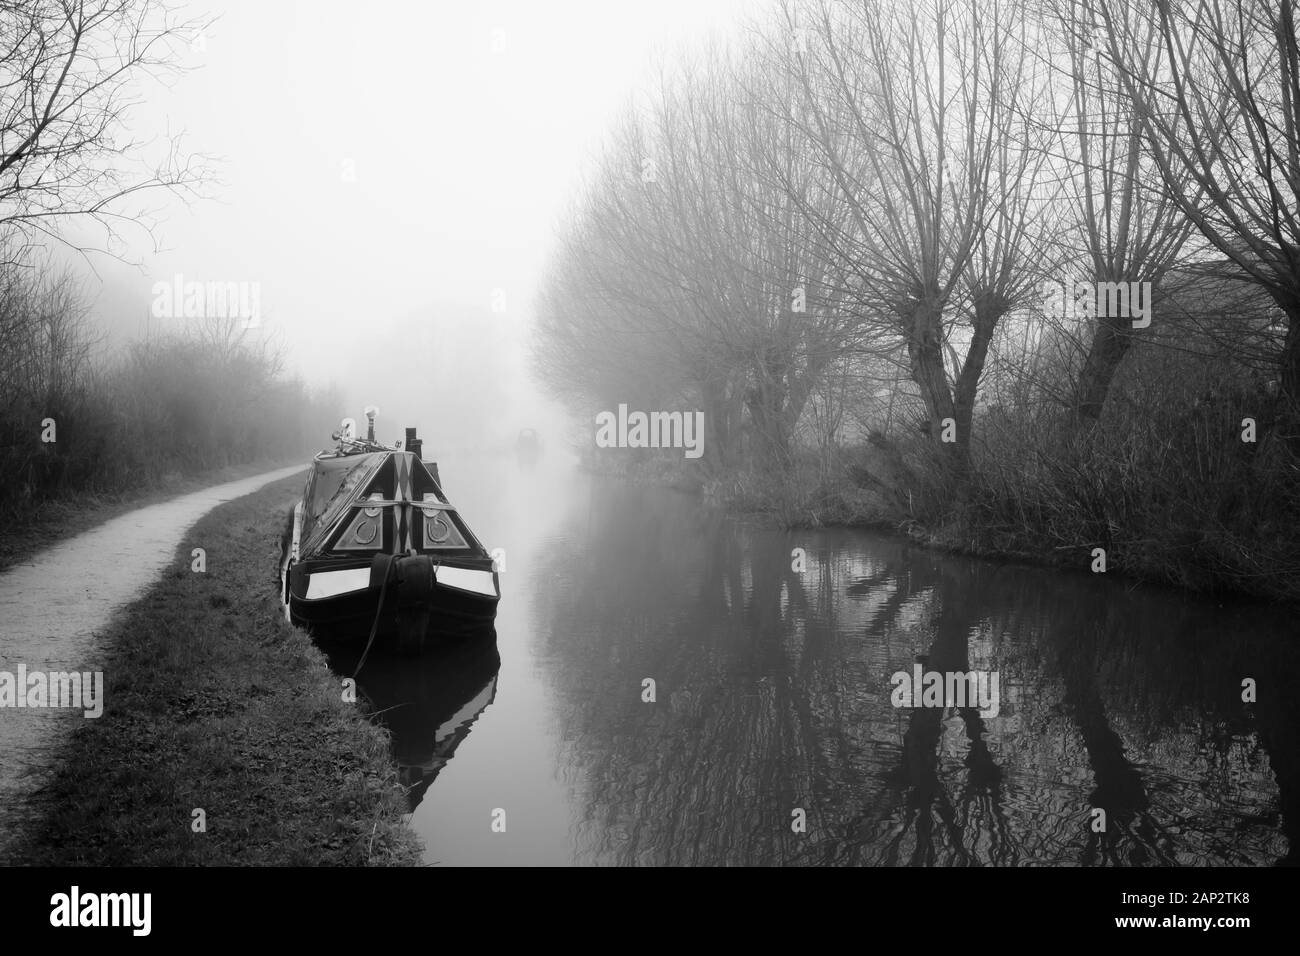 Suchergebnisse Web-Ergebnisse Trent und Mersey Canal in Stone, Stafffordshire, England mit einem schmalen Boot oder Schiff. Foto aufgenommen an einem nebligen Morgen Stockfoto